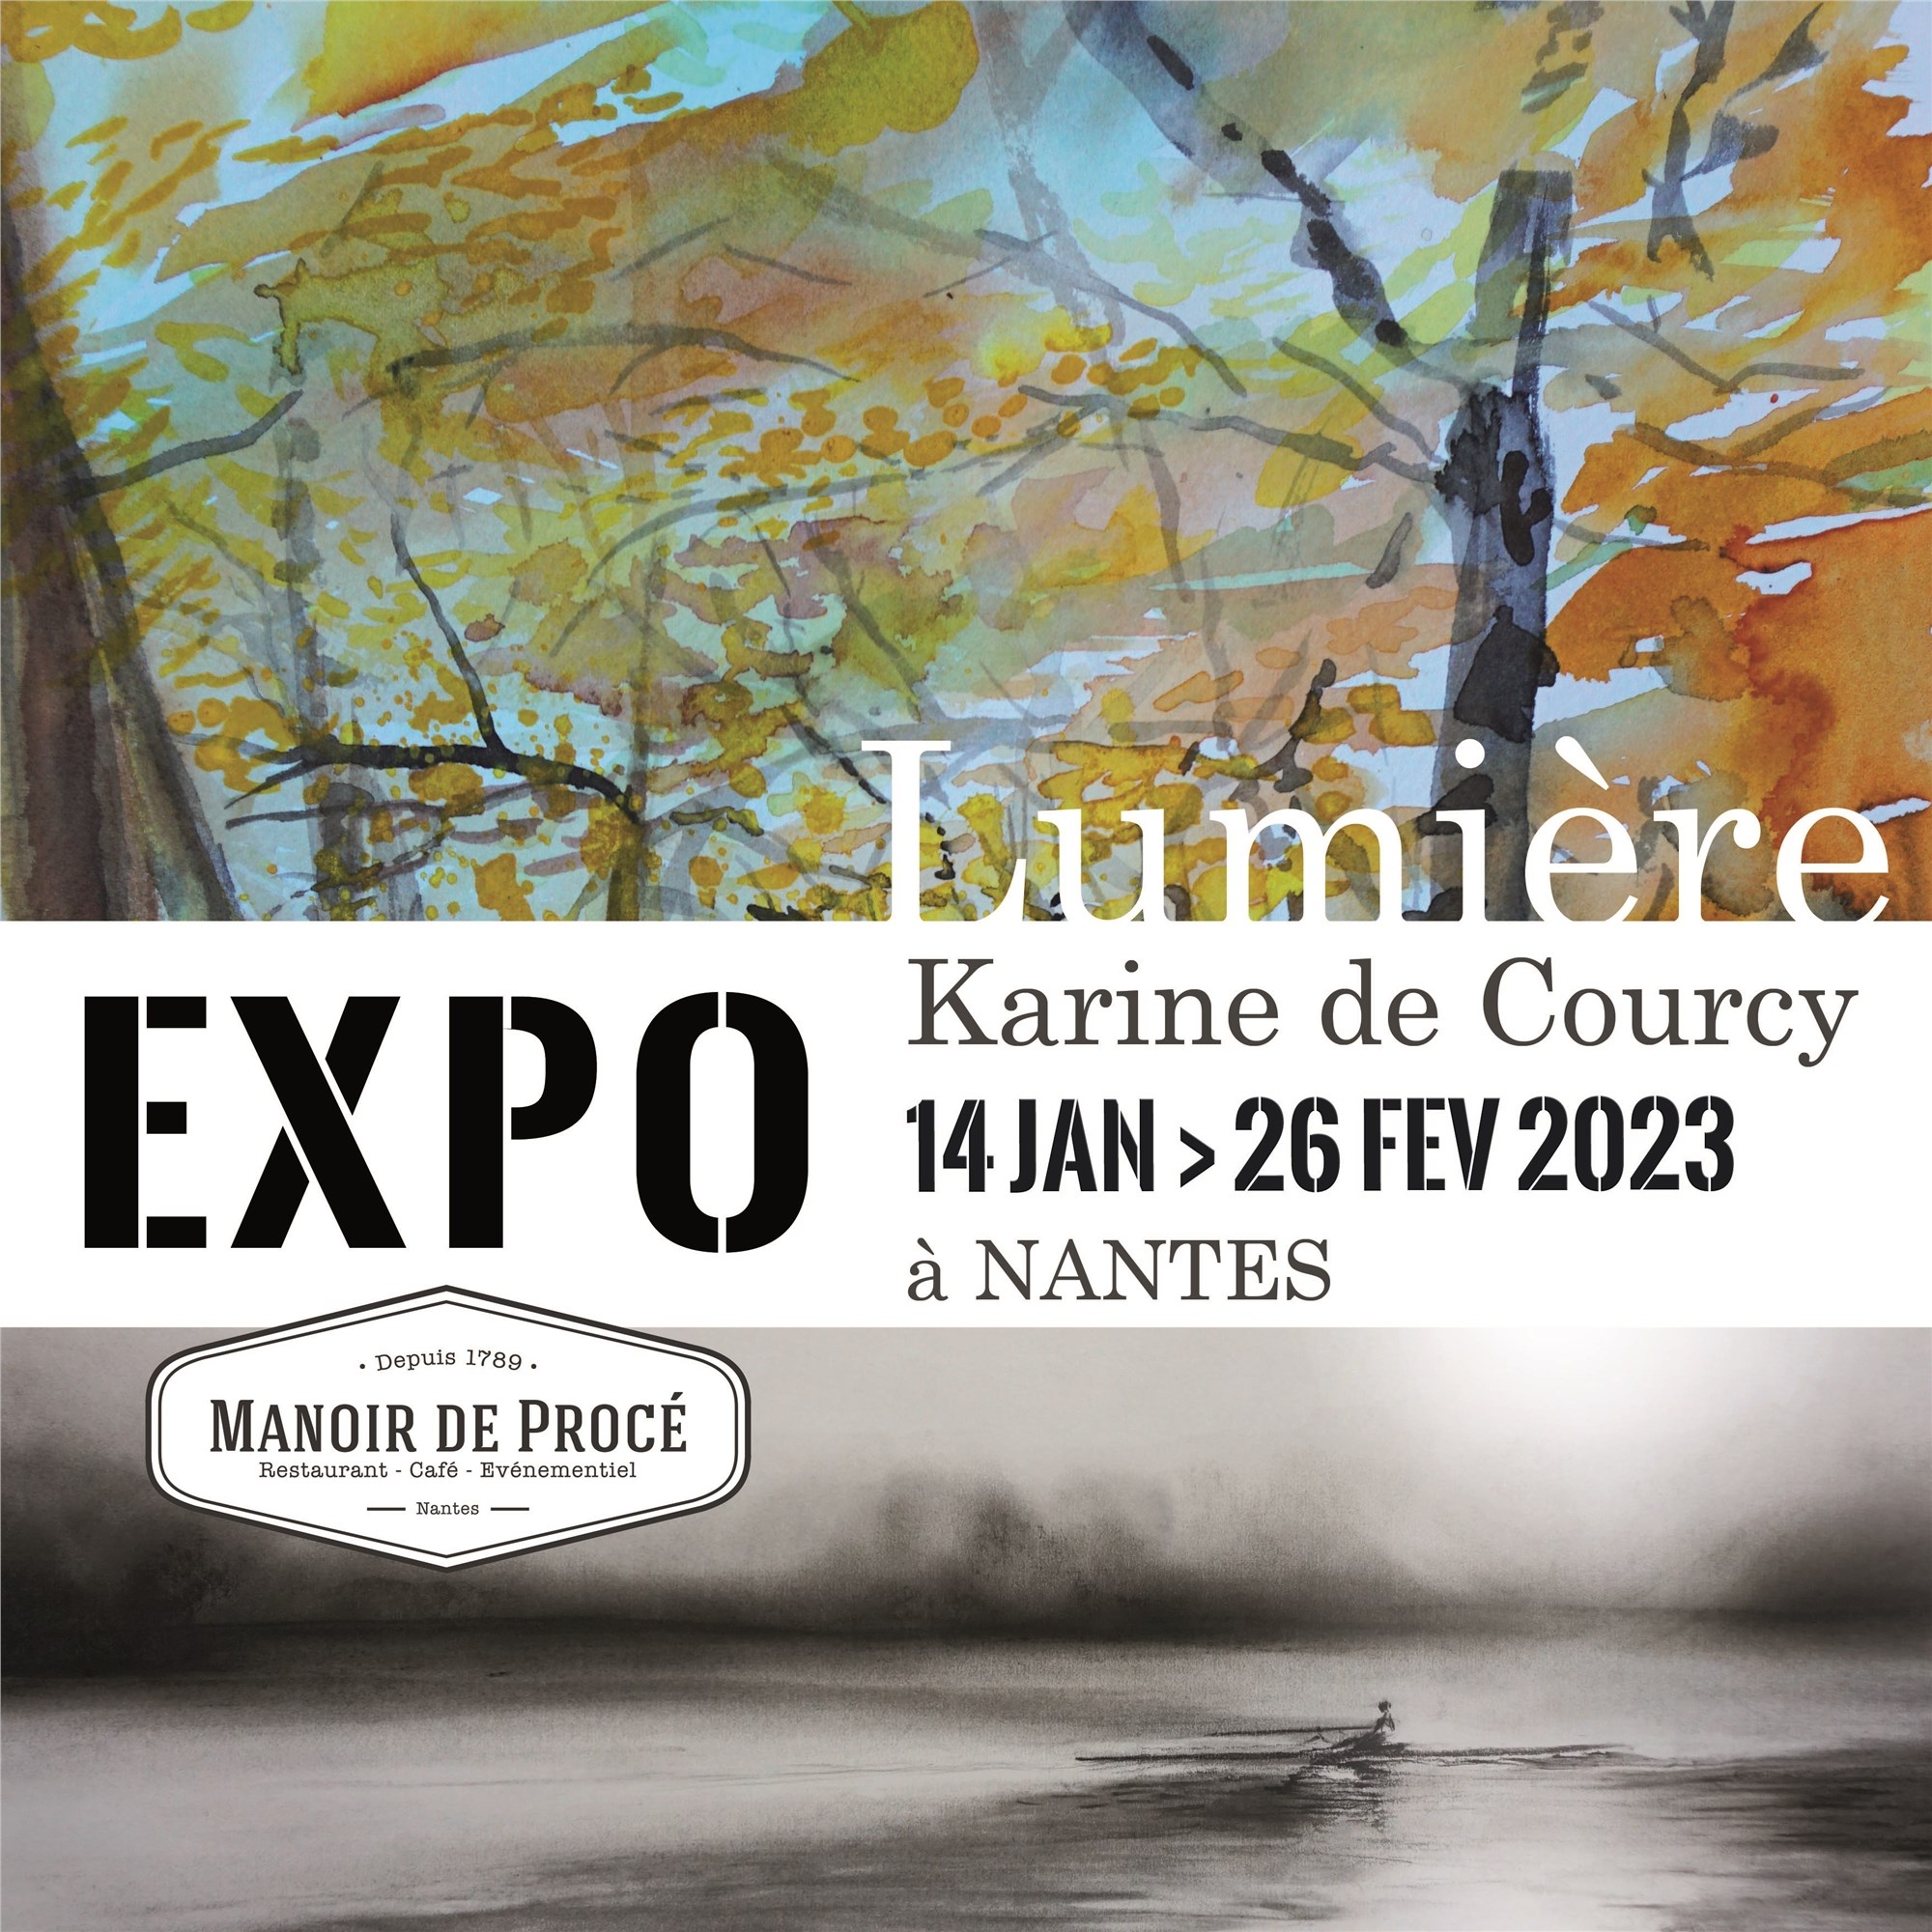 EXPO Karine de Courcy - Nantes © Karine de Courcy